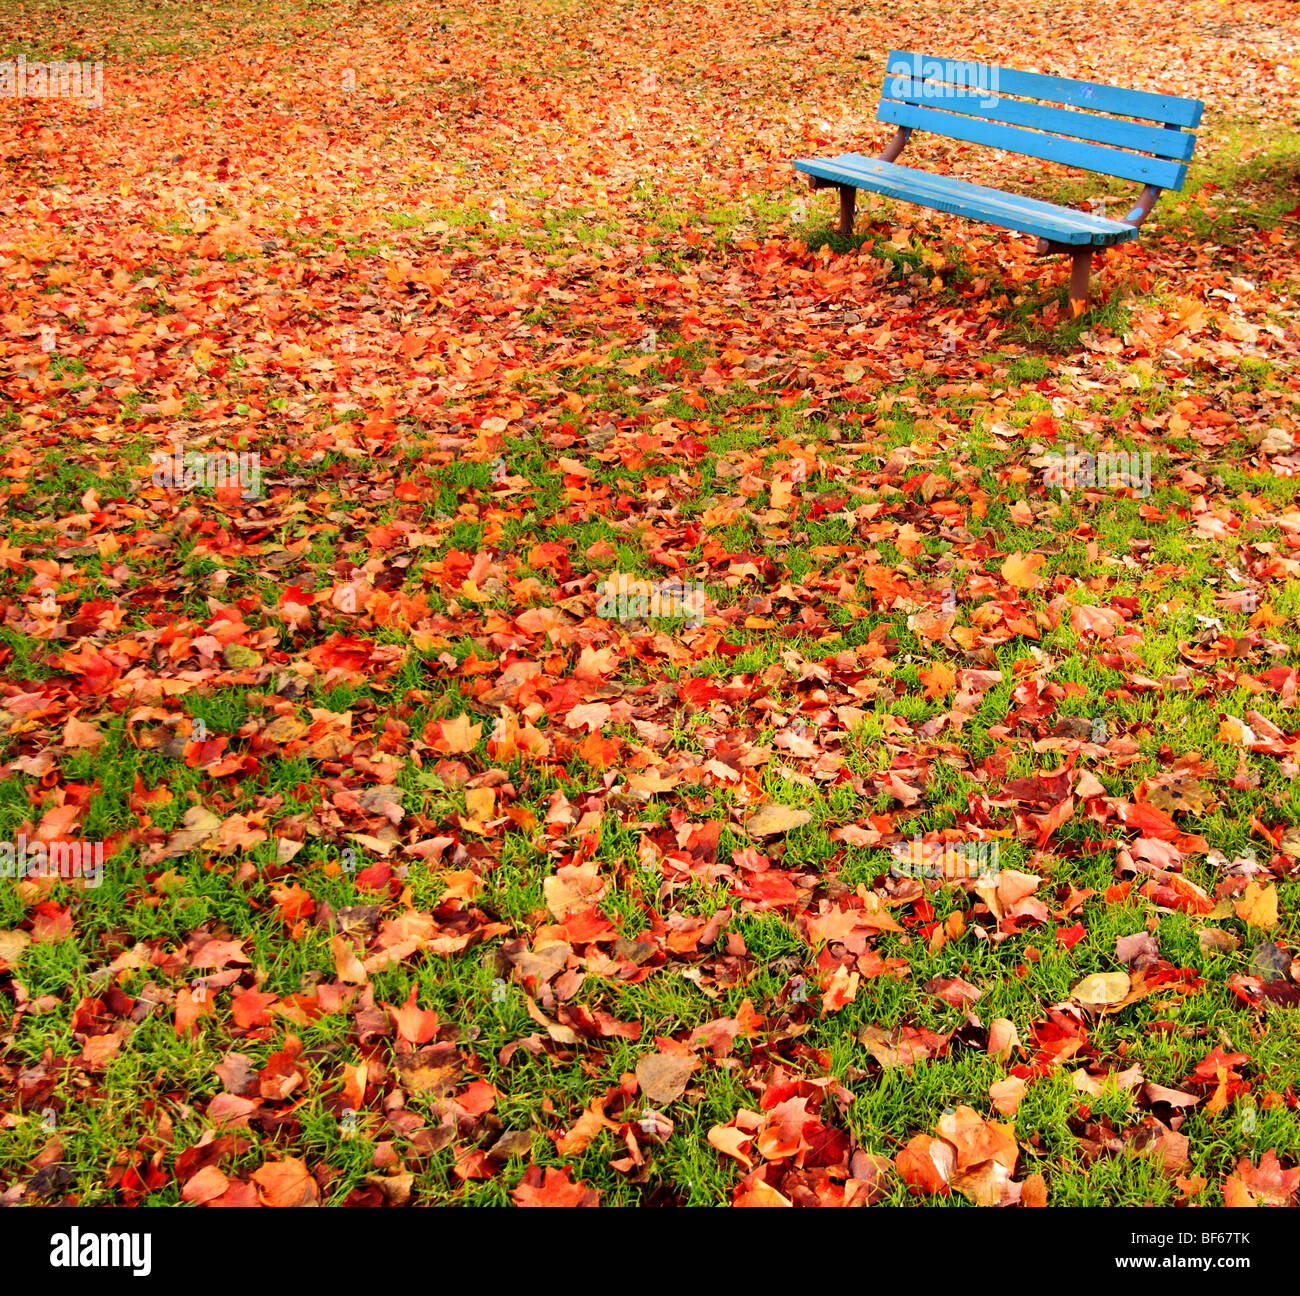 Eine einsame, blaue Bank in einem Park, umgeben von Herbstlaub. Stockfoto